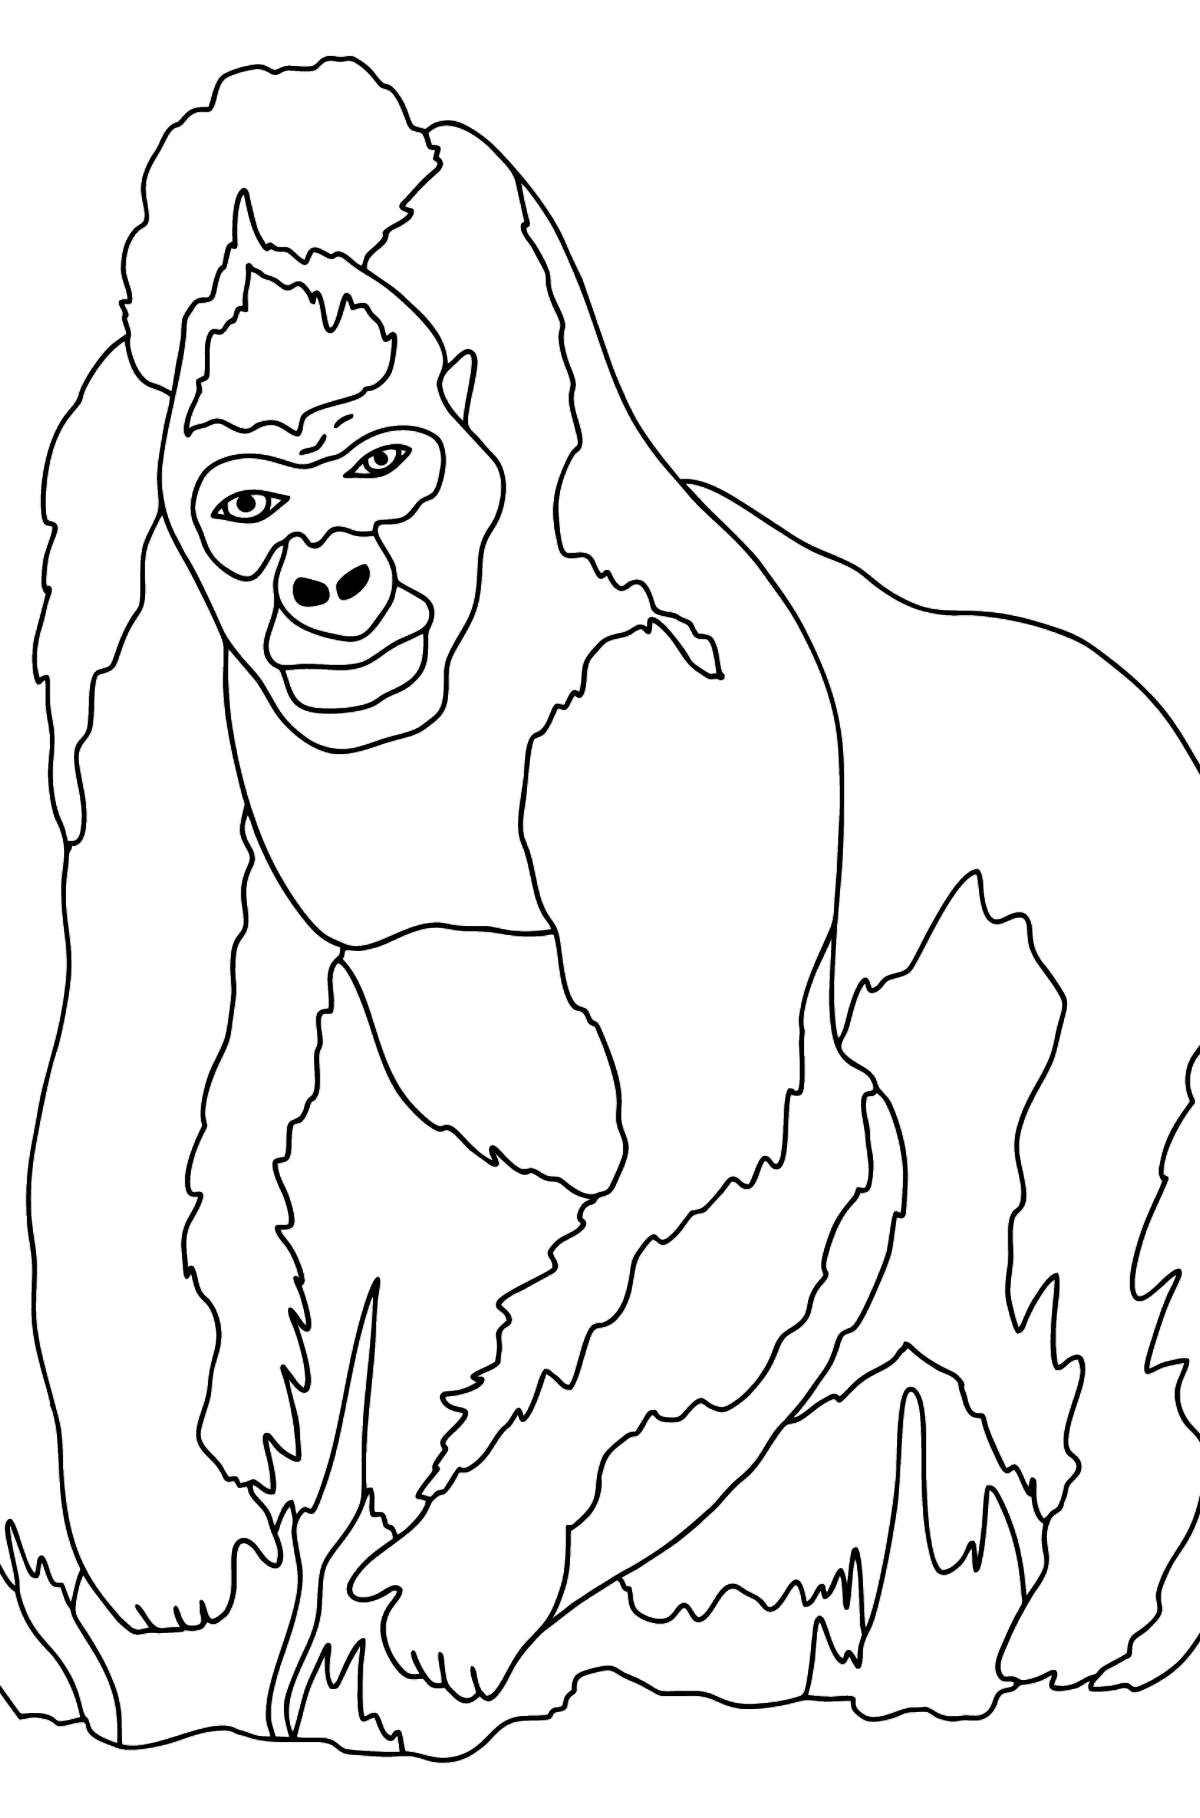 Tegning til fargelegging gorilla (vanskelig) - Tegninger til fargelegging for barn